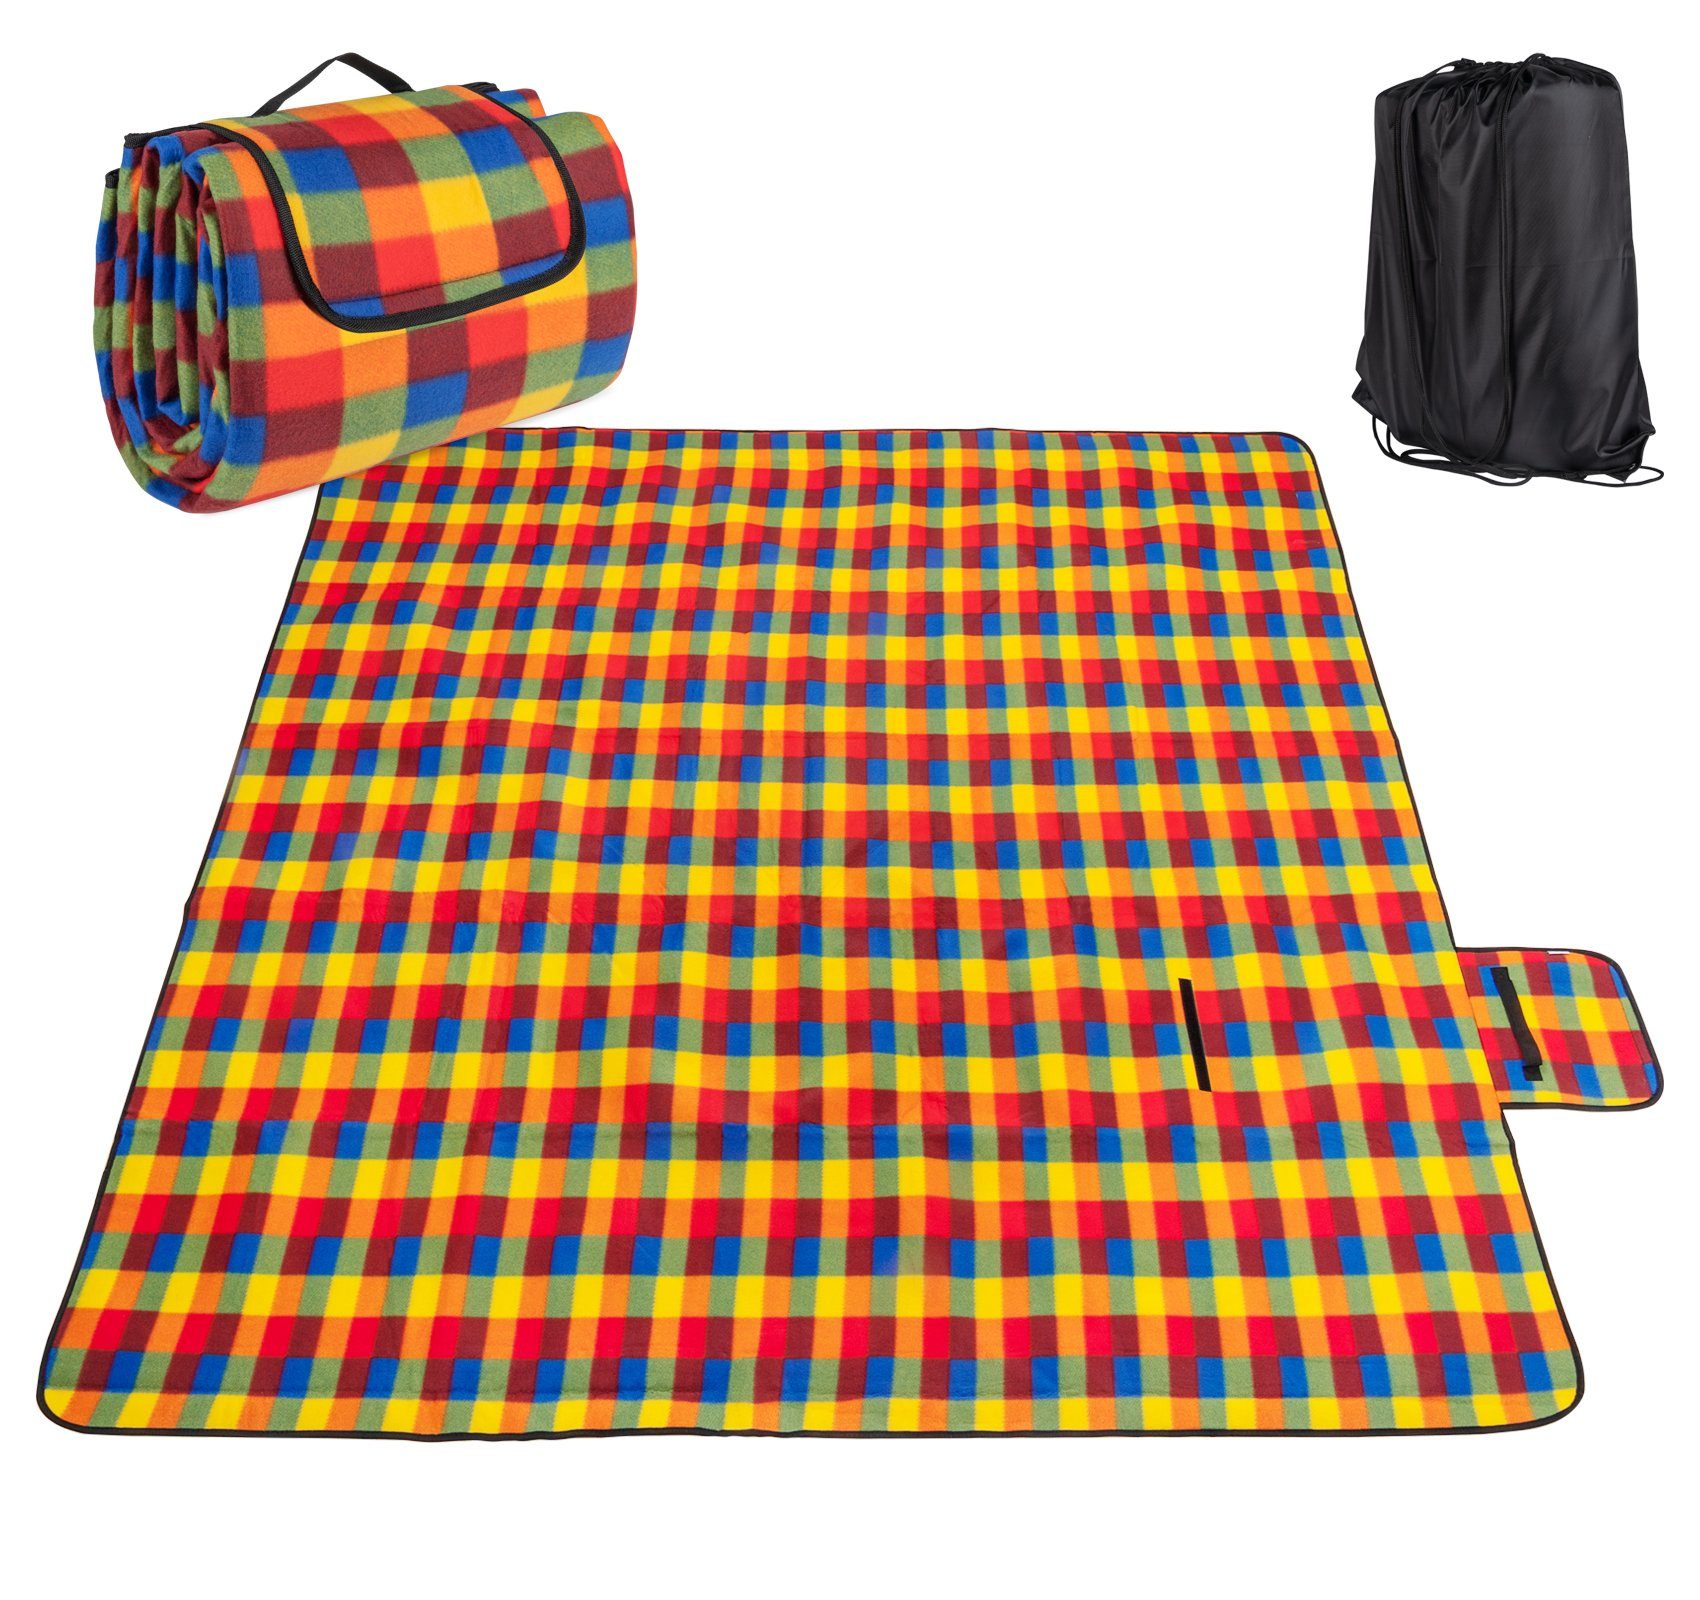 Picknickdecke Faltbar Fleece Stranddecke Camping-Decke 200x195cm Matte mit Rucksack, Homewit, mit Aufbewahrungsbeutel, Wasserfeste Unterseite Bunt